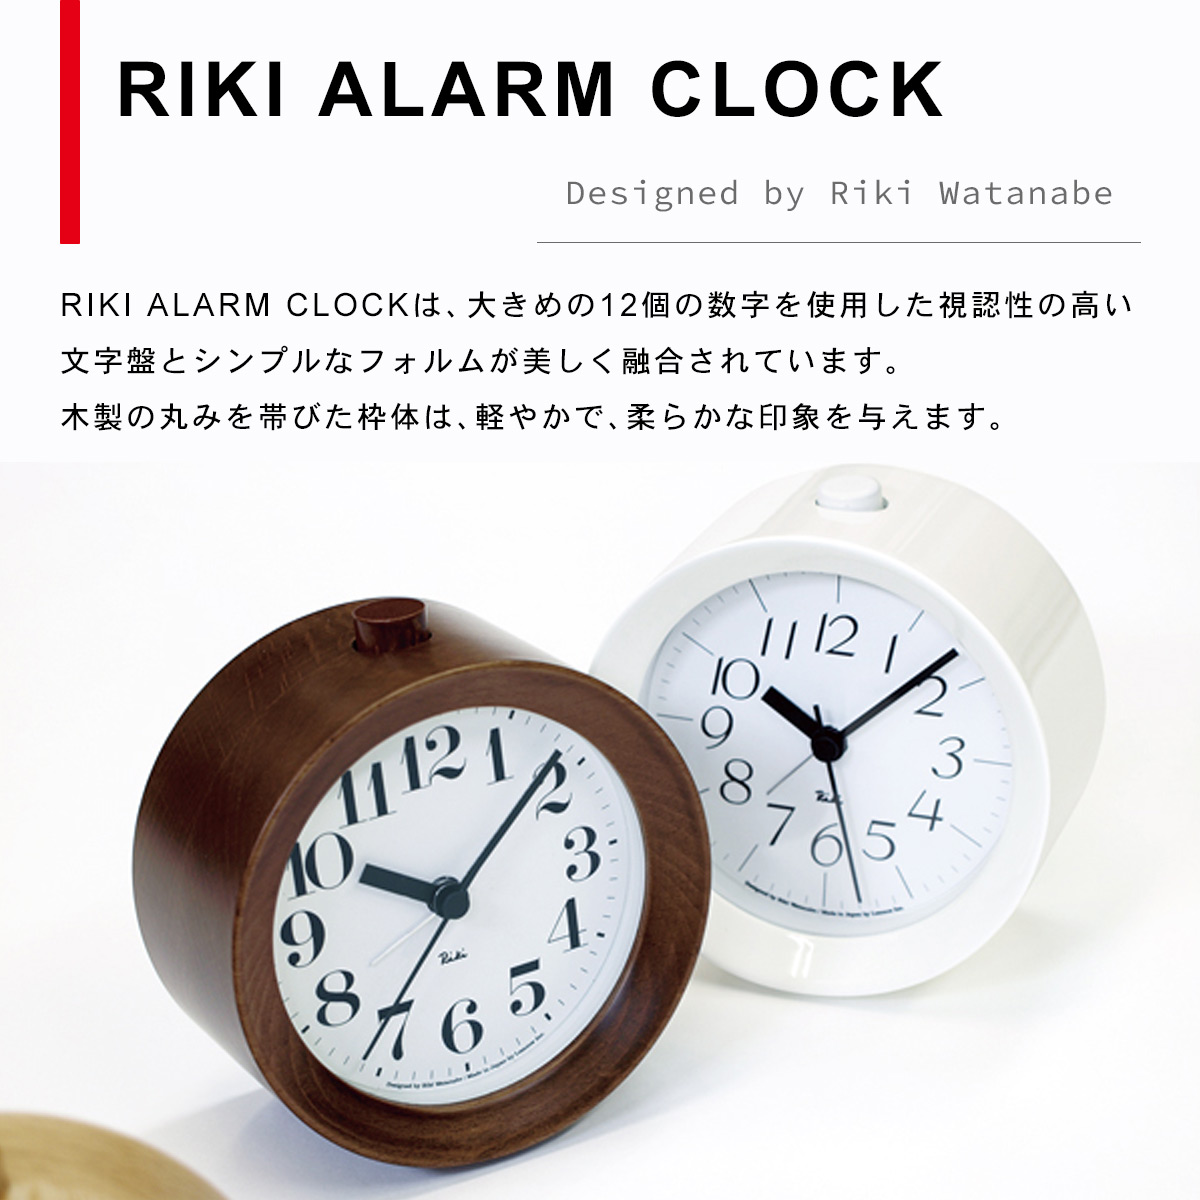 RIKI ALARM CLOCK リキ アラーム クロック【ブラウン】 WR09-15 BW